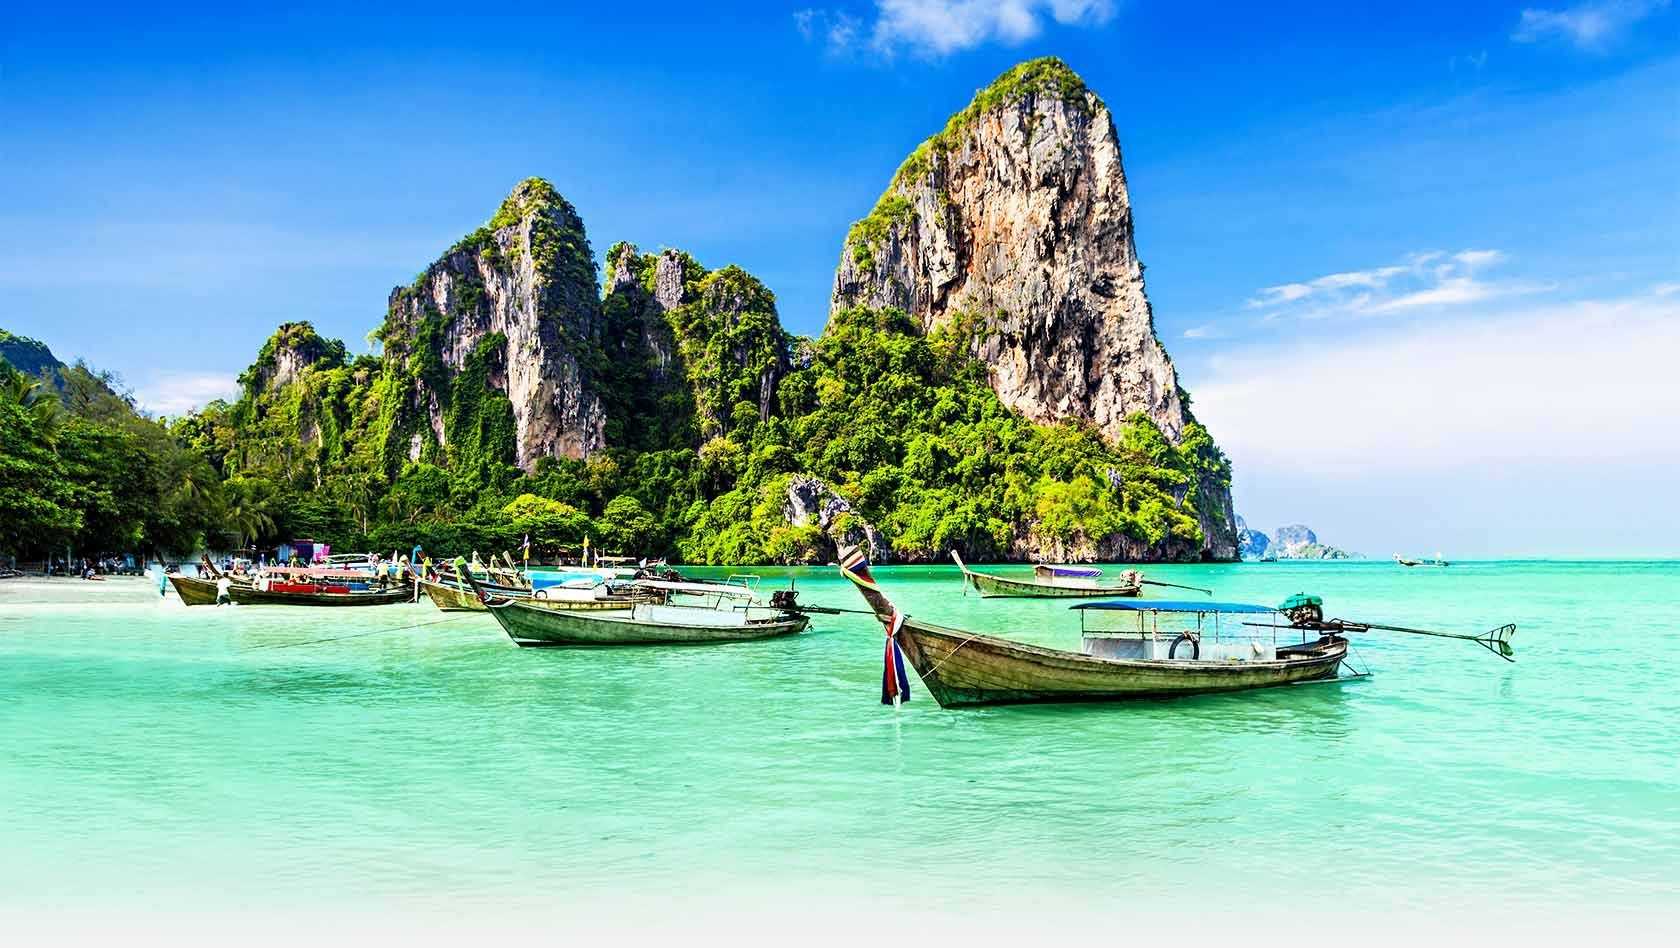 В тайланд без визы: правила въезда и сроки пребывания в стране